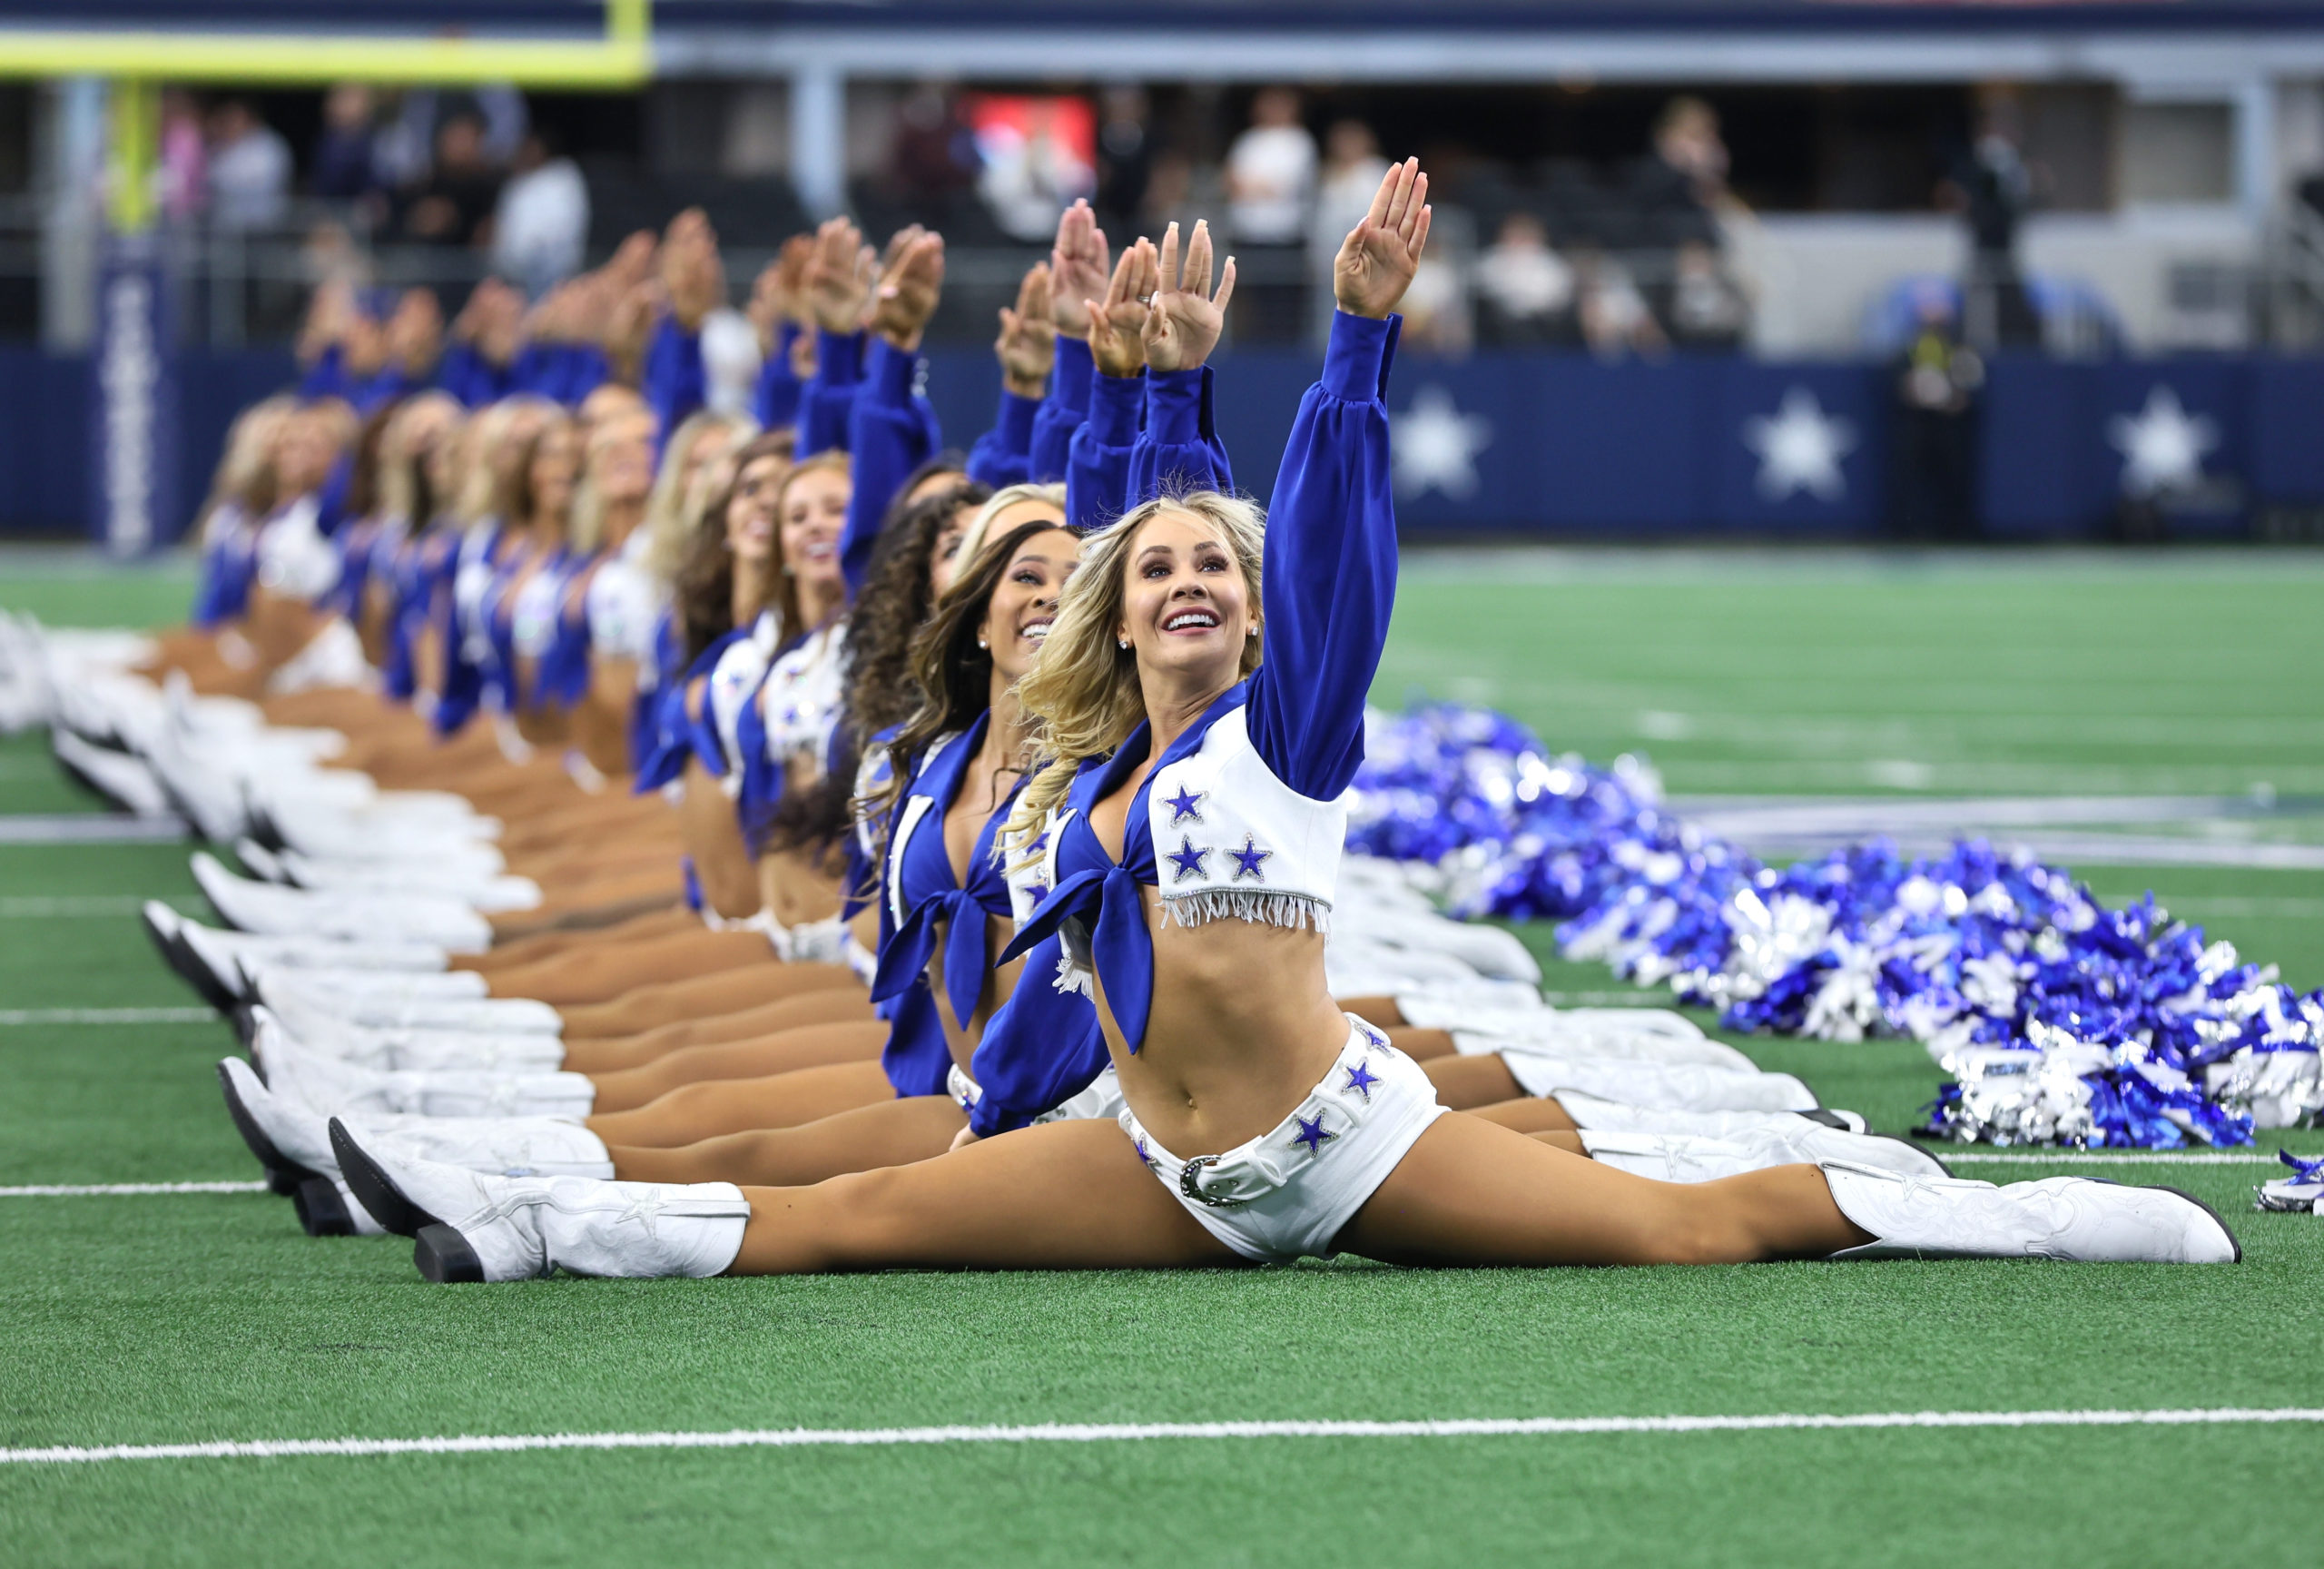 Dallas Cowboys vs Washington Football Team – Dallas Cowboys Cheerleaders